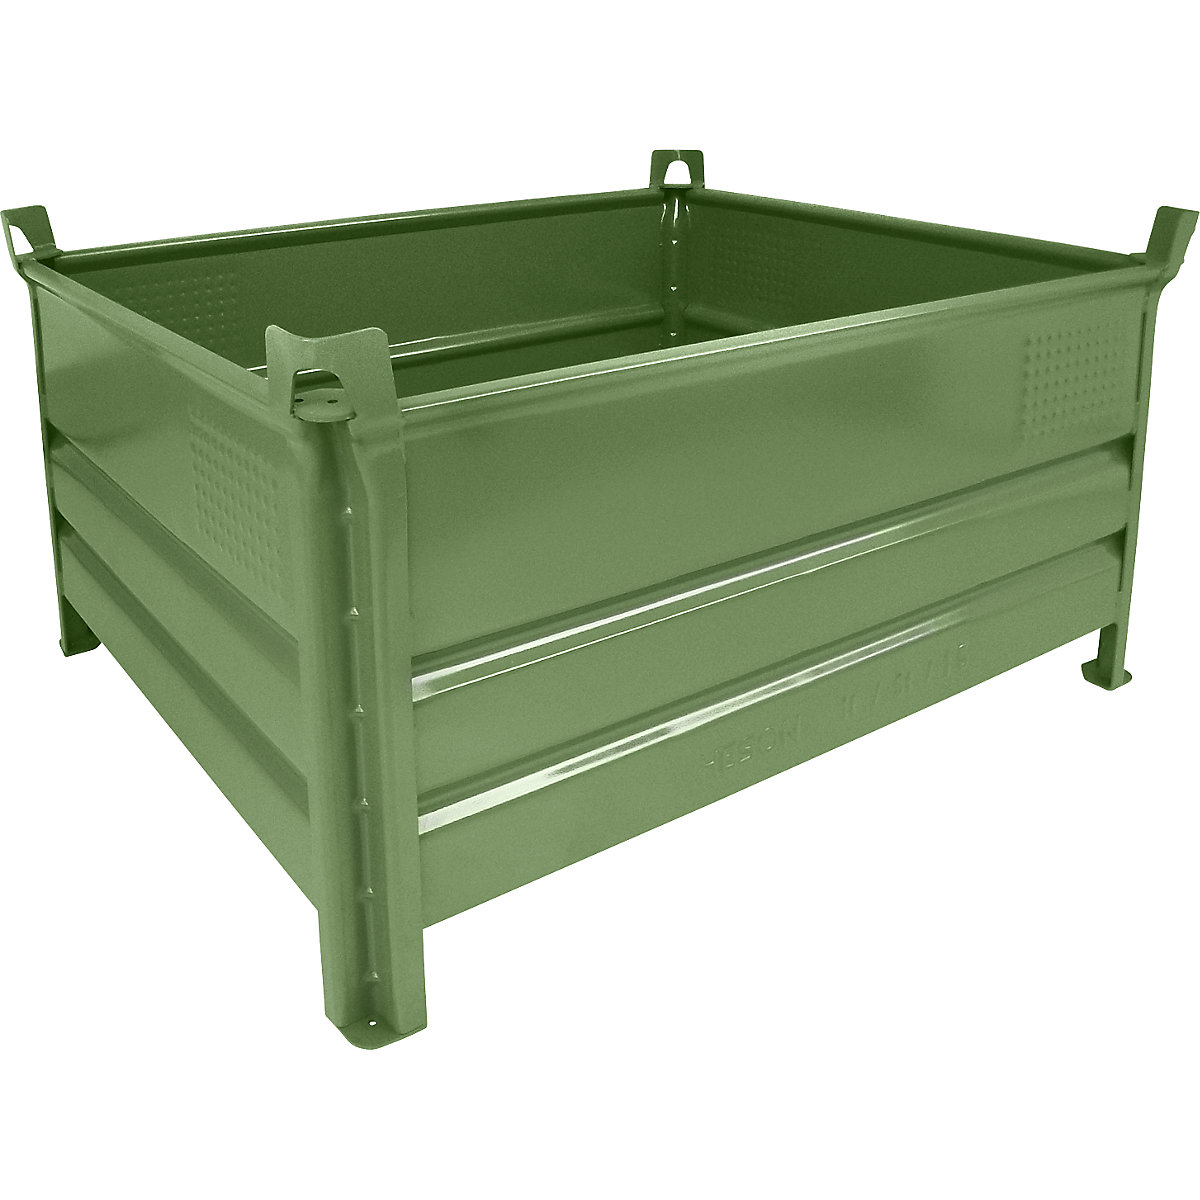 Teli falú rakásolható tároló – Heson, szé x h 1000 x 1200 mm, teherbírás 1000 kg, zöld, 1 db-tól-8